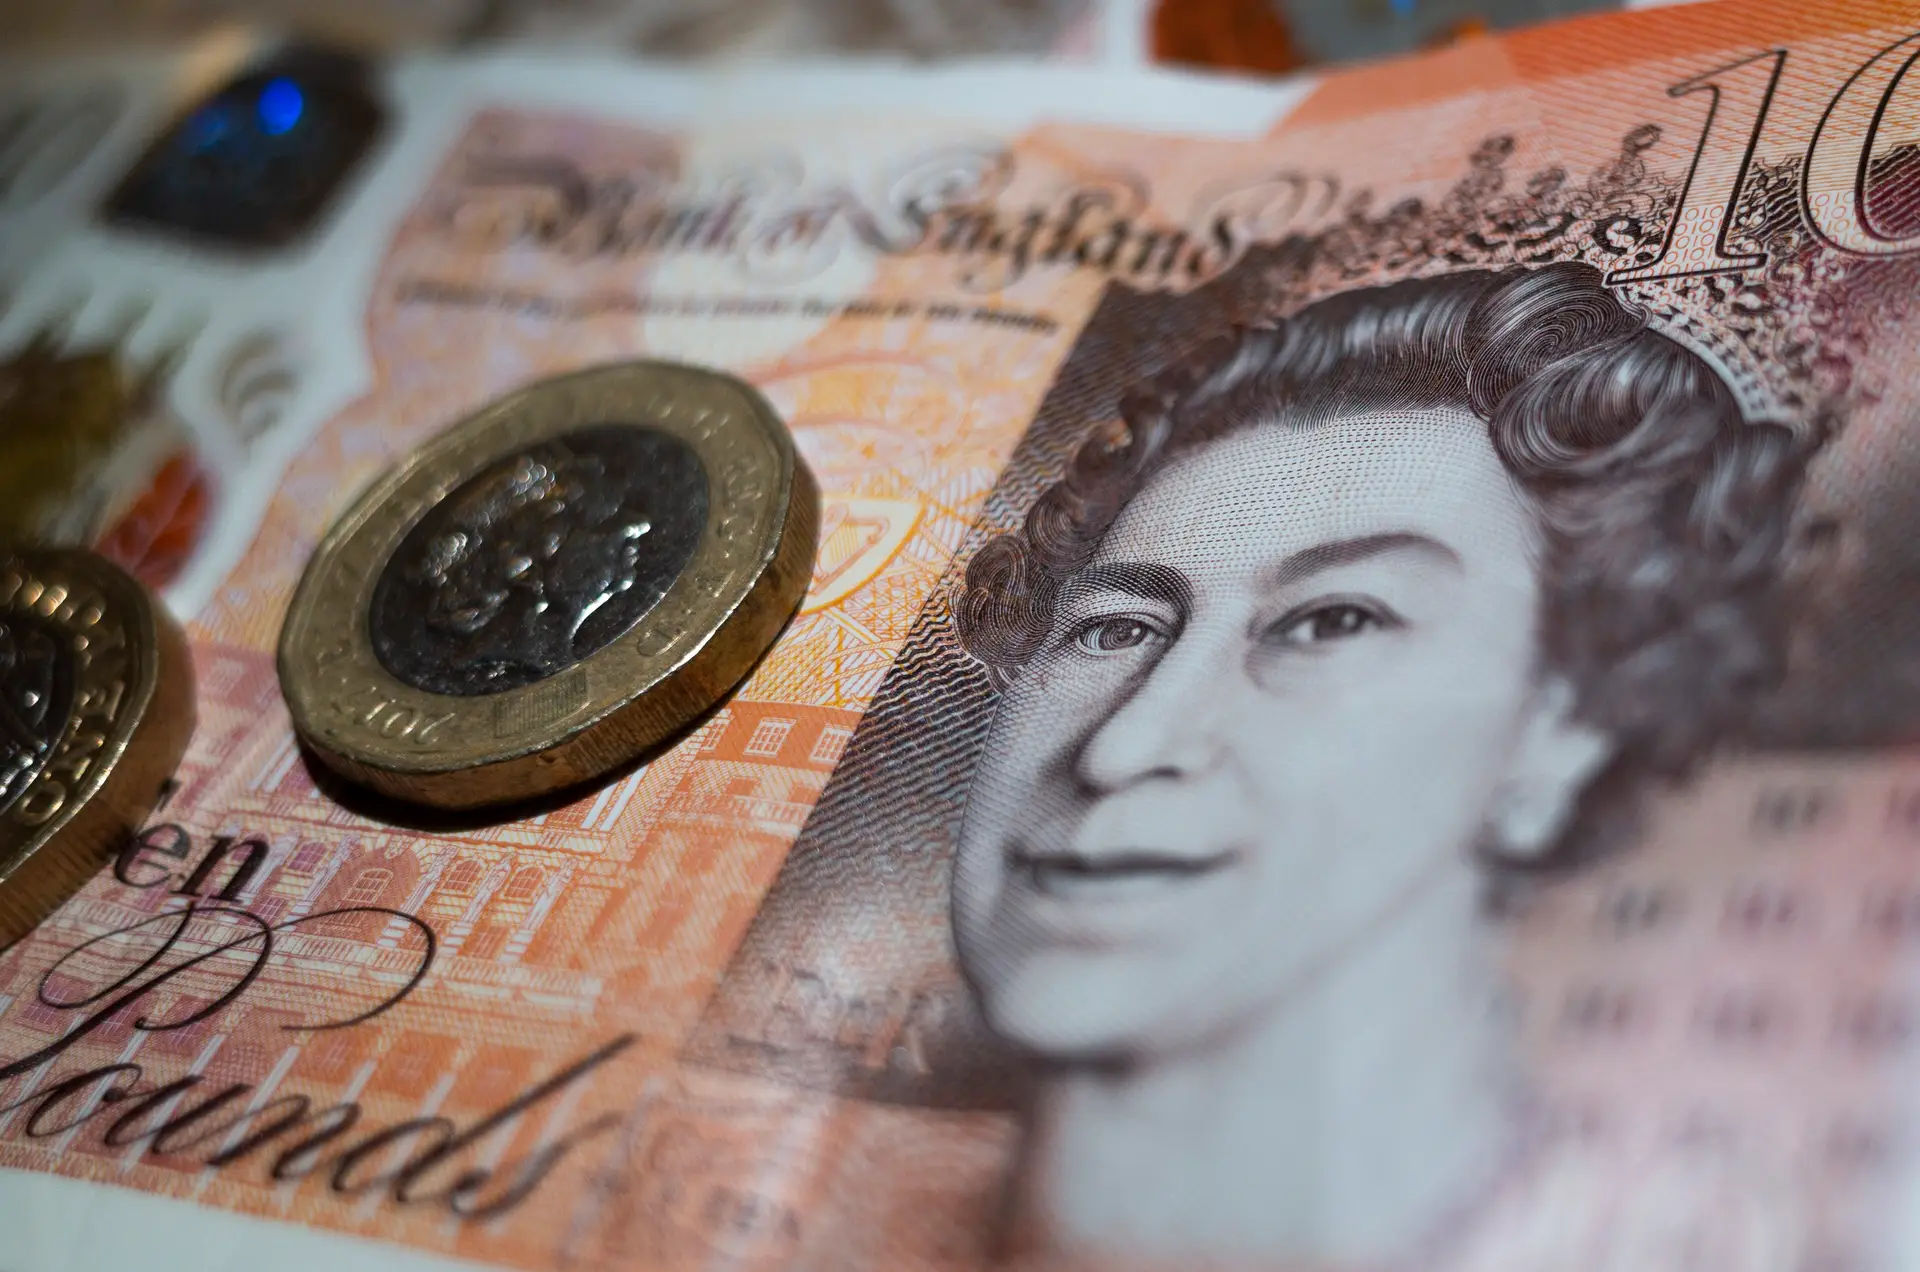 O rosto da rainha Isabel II numa nota de 10 libras